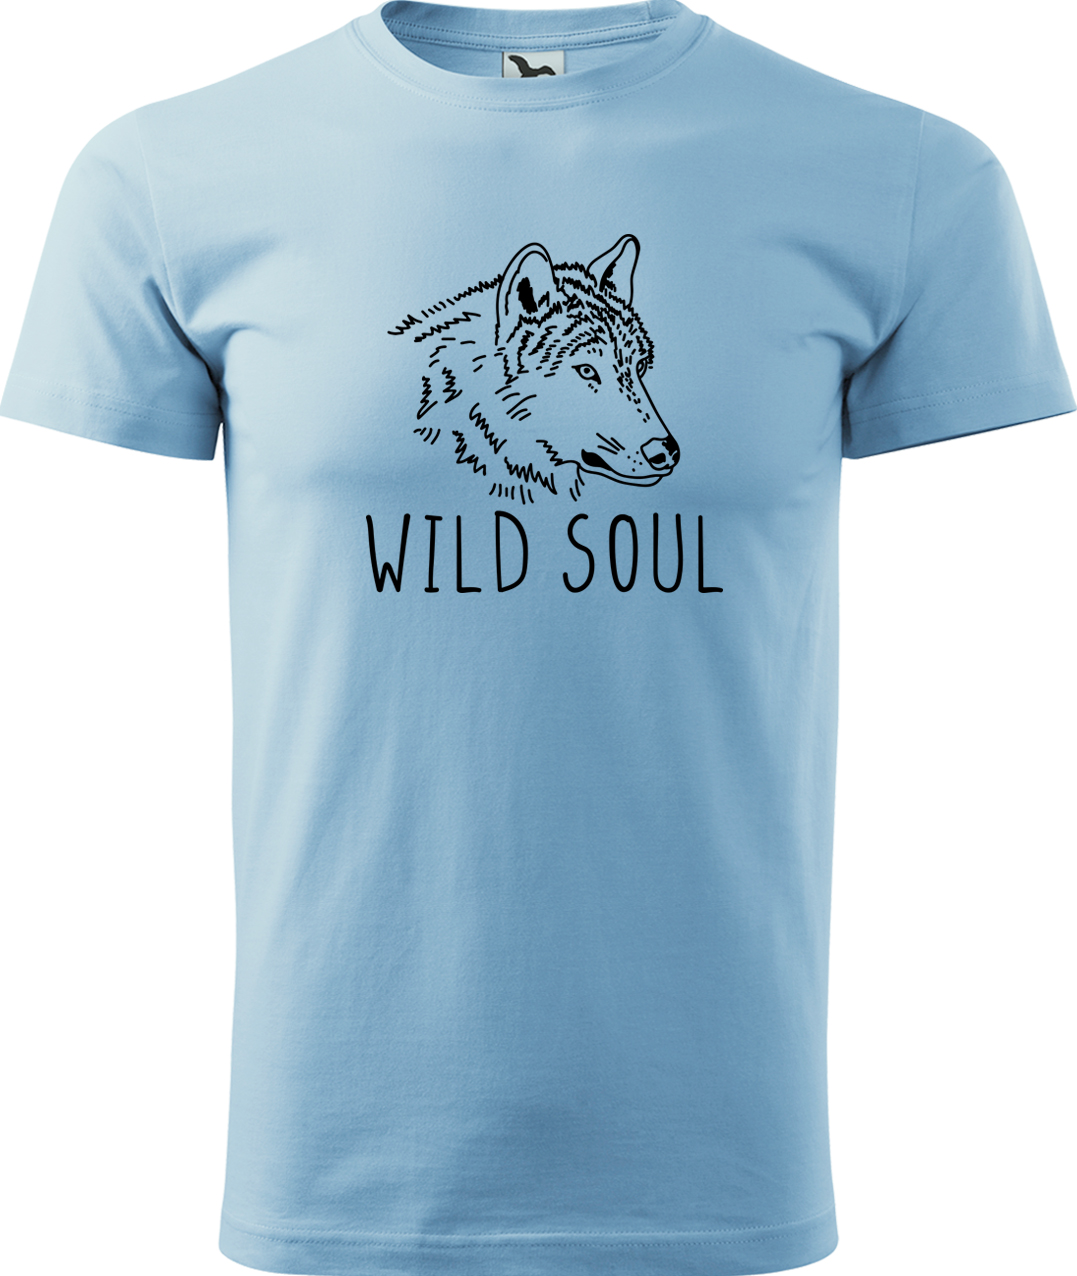 Pánské tričko s vlkem - Wild soul Velikost: S, Barva: Nebesky modrá (15), Střih: pánský